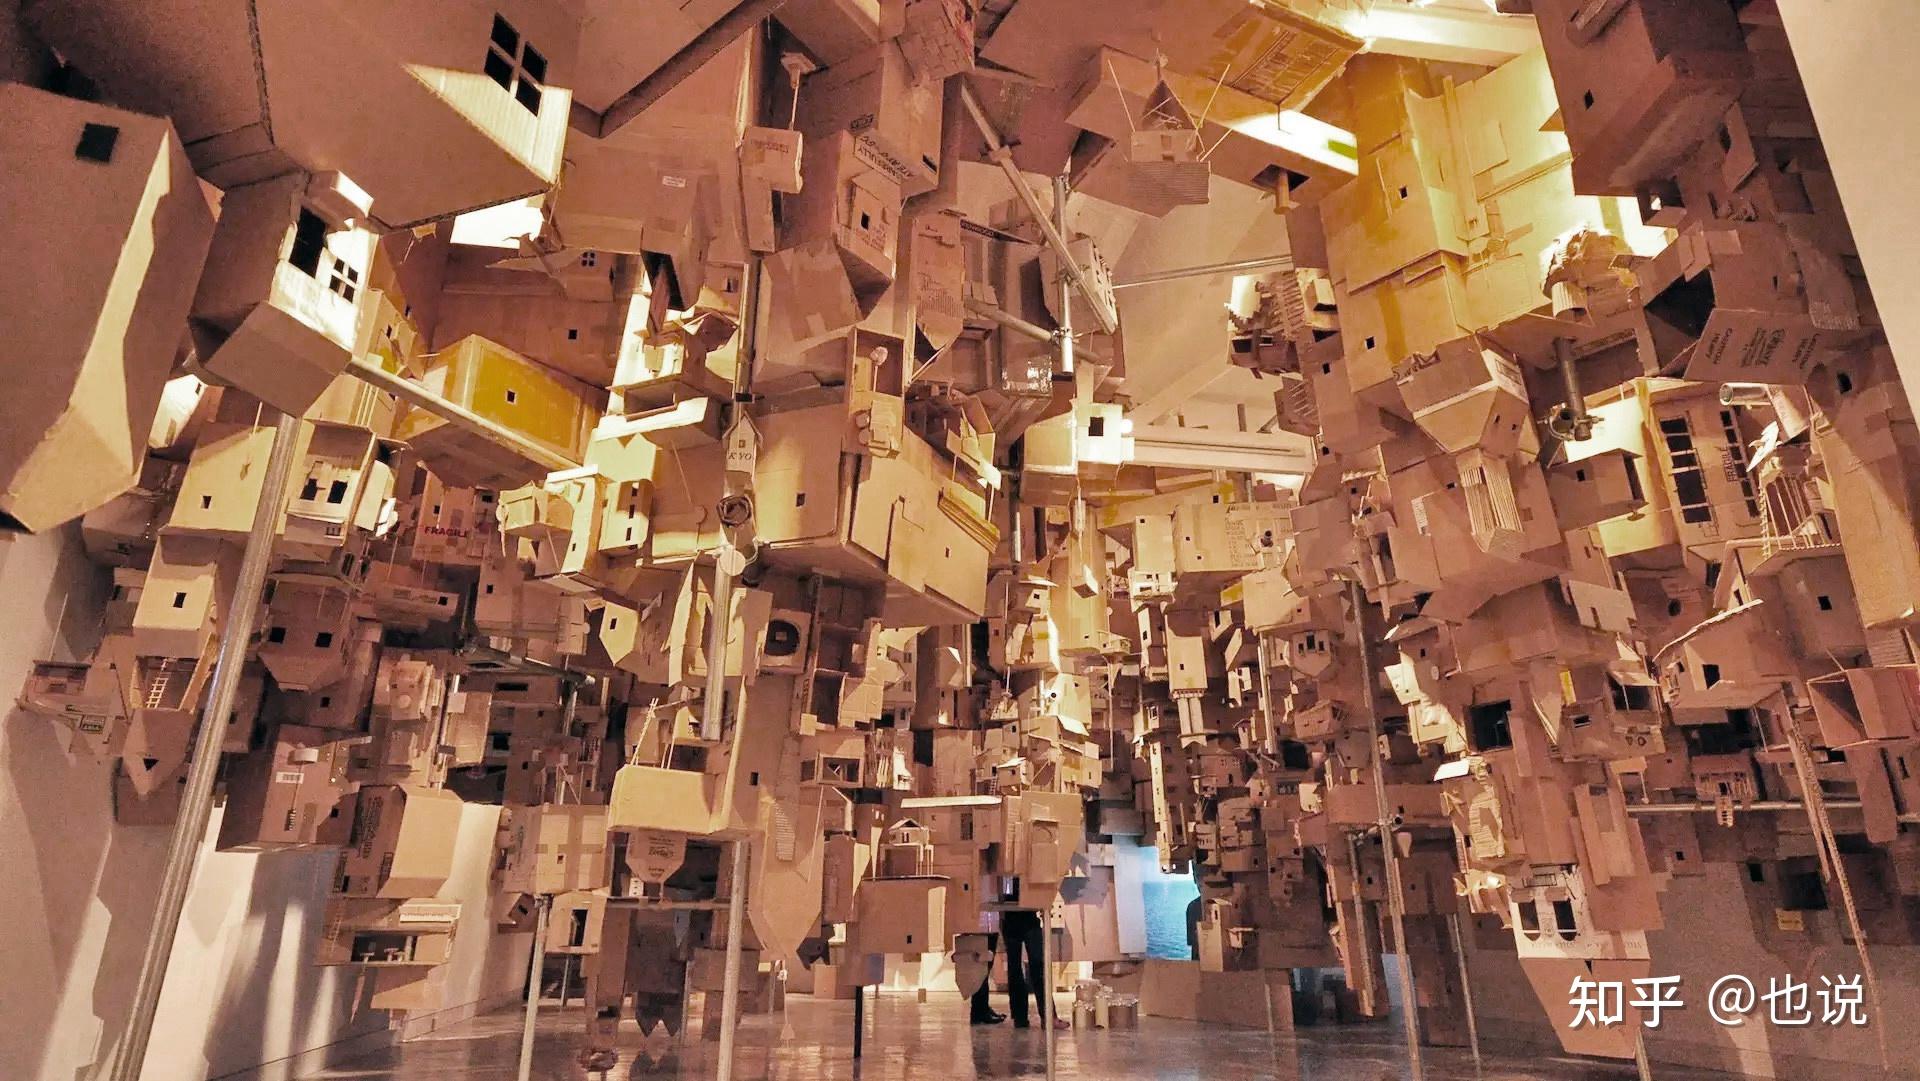 央美毕业展作品「超级蜂巢」被吐槽「一堆废纸壳」 ,作者道歉称造价上